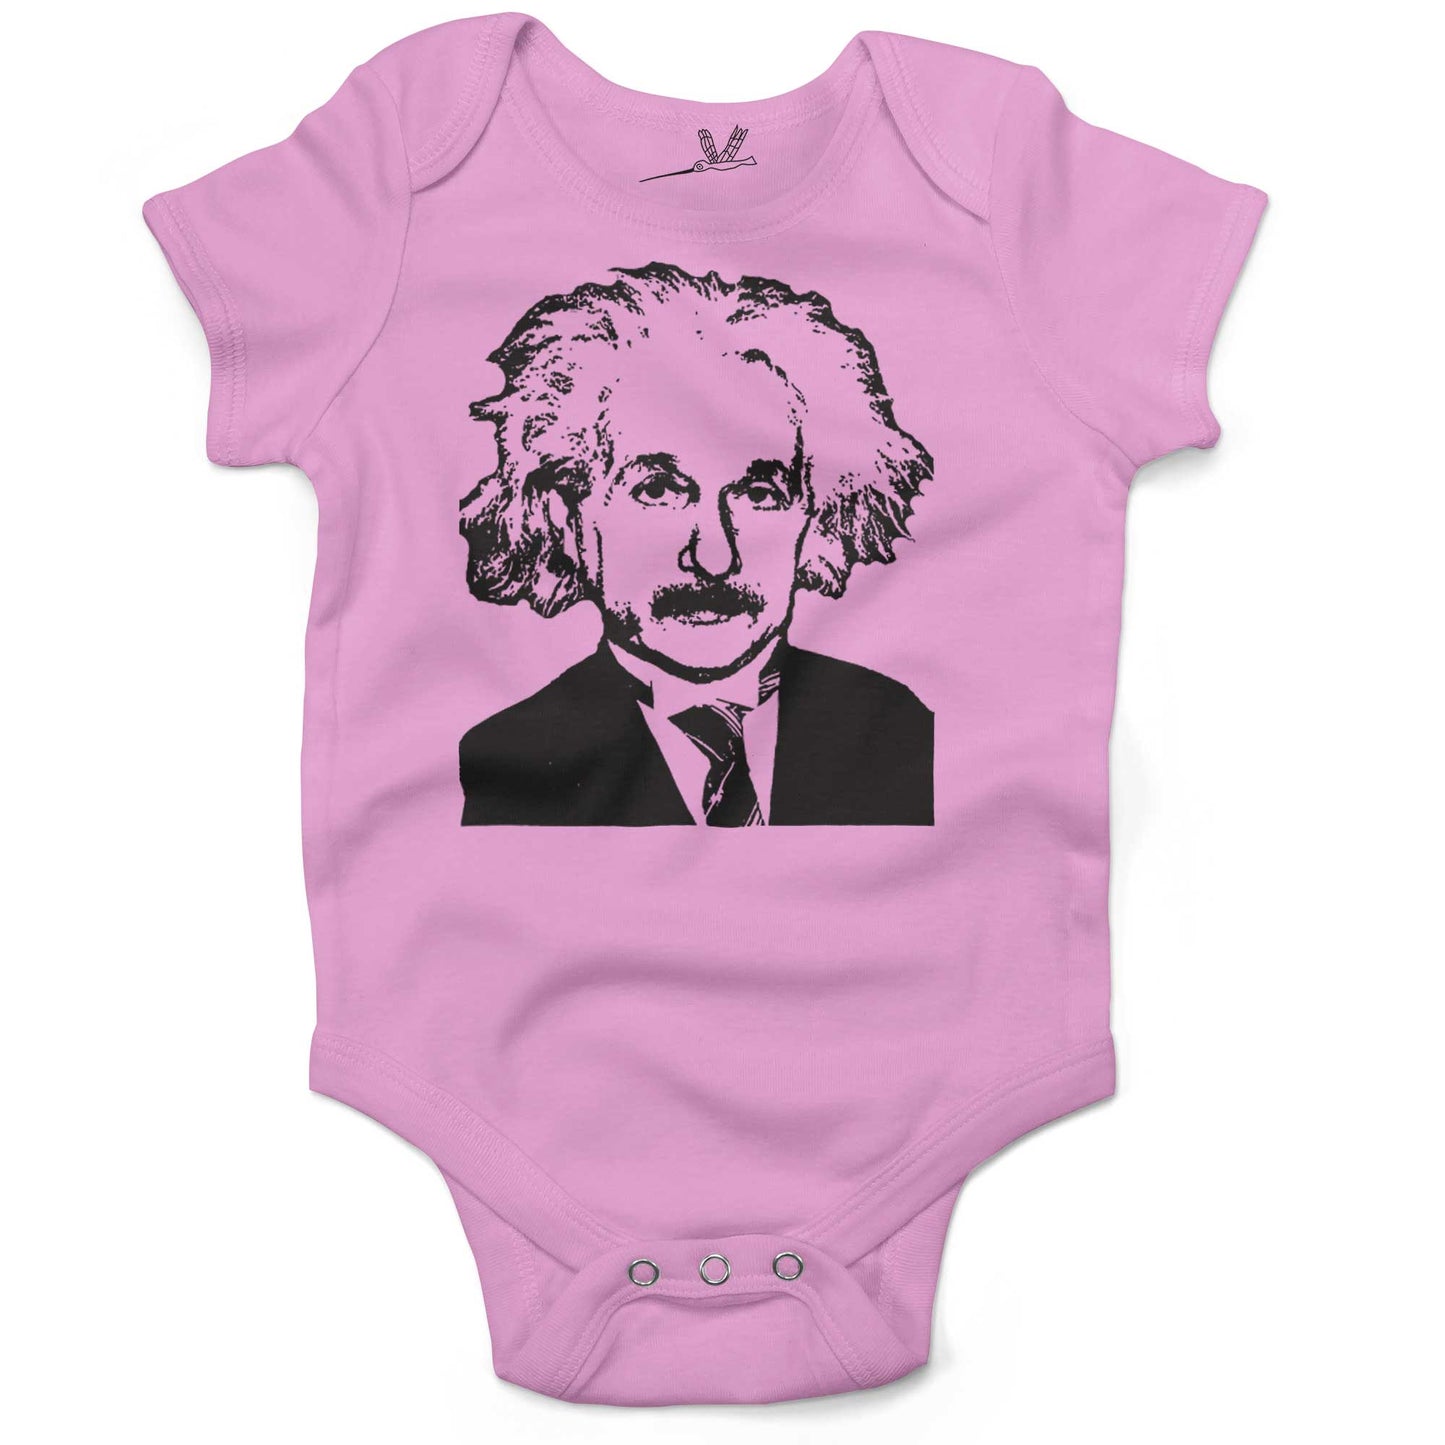 Albert Einstein Infant Bodysuit or Raglan Baby Tee-Organic Pink-3-6 months